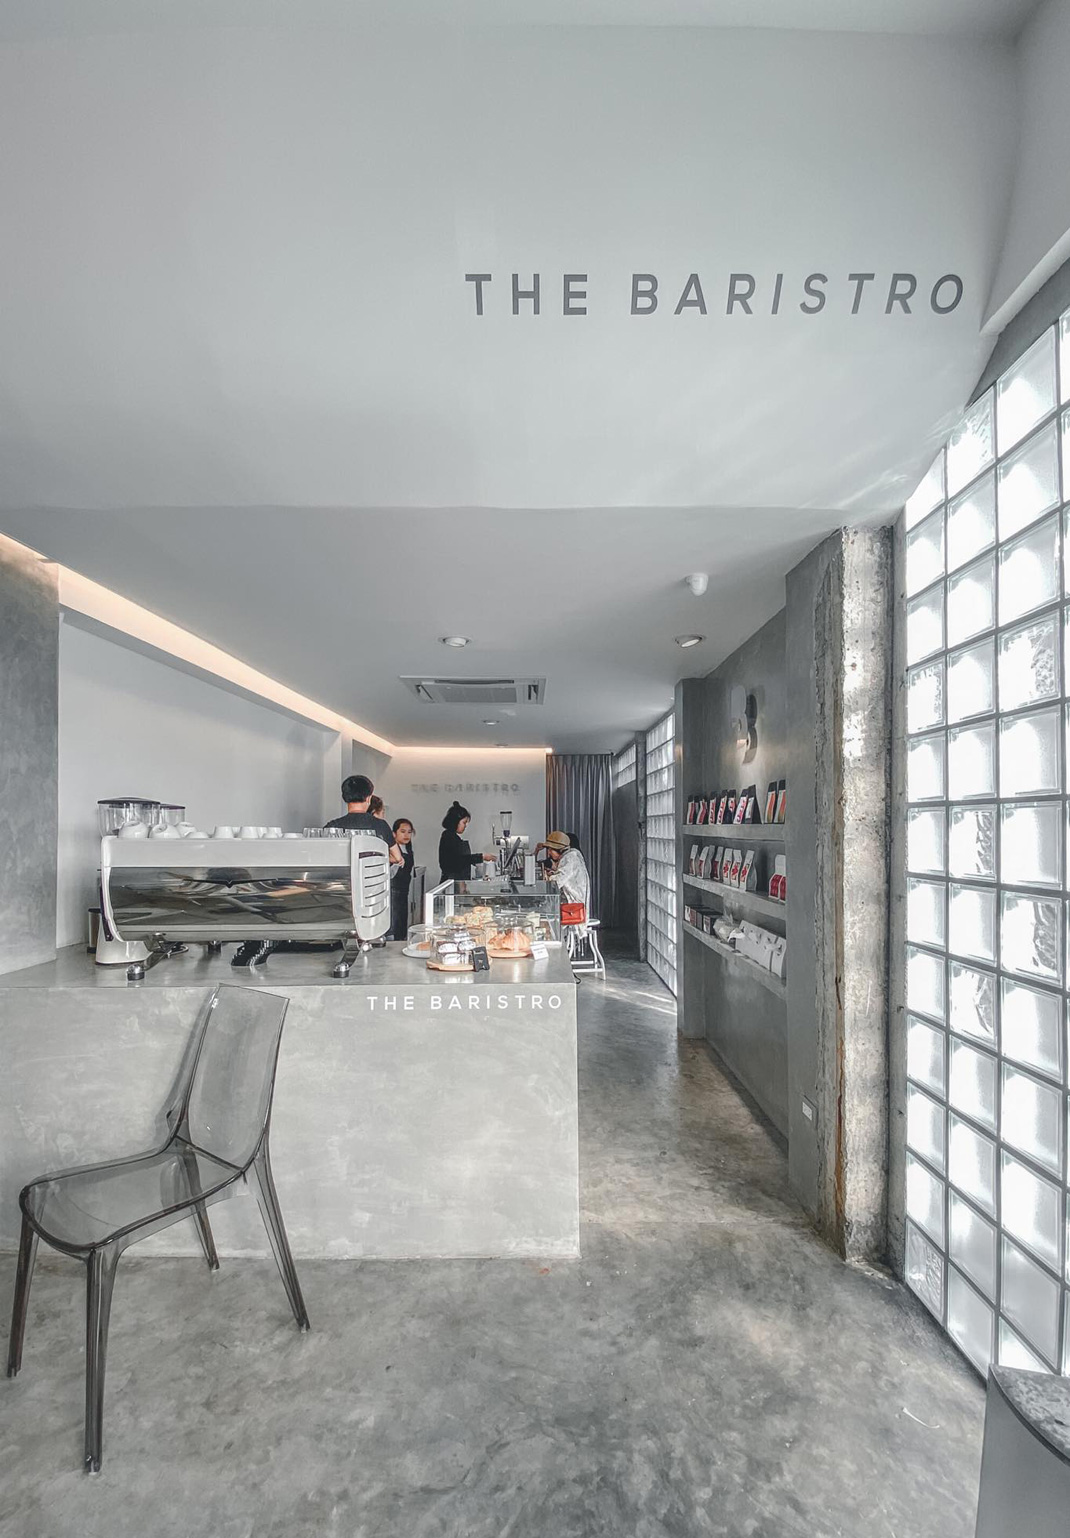 泰国清迈The Baristro咖啡厅 泰国 清迈 咖啡厅 小清新 网红店 logo设计 vi设计 空间设计 视觉餐饮